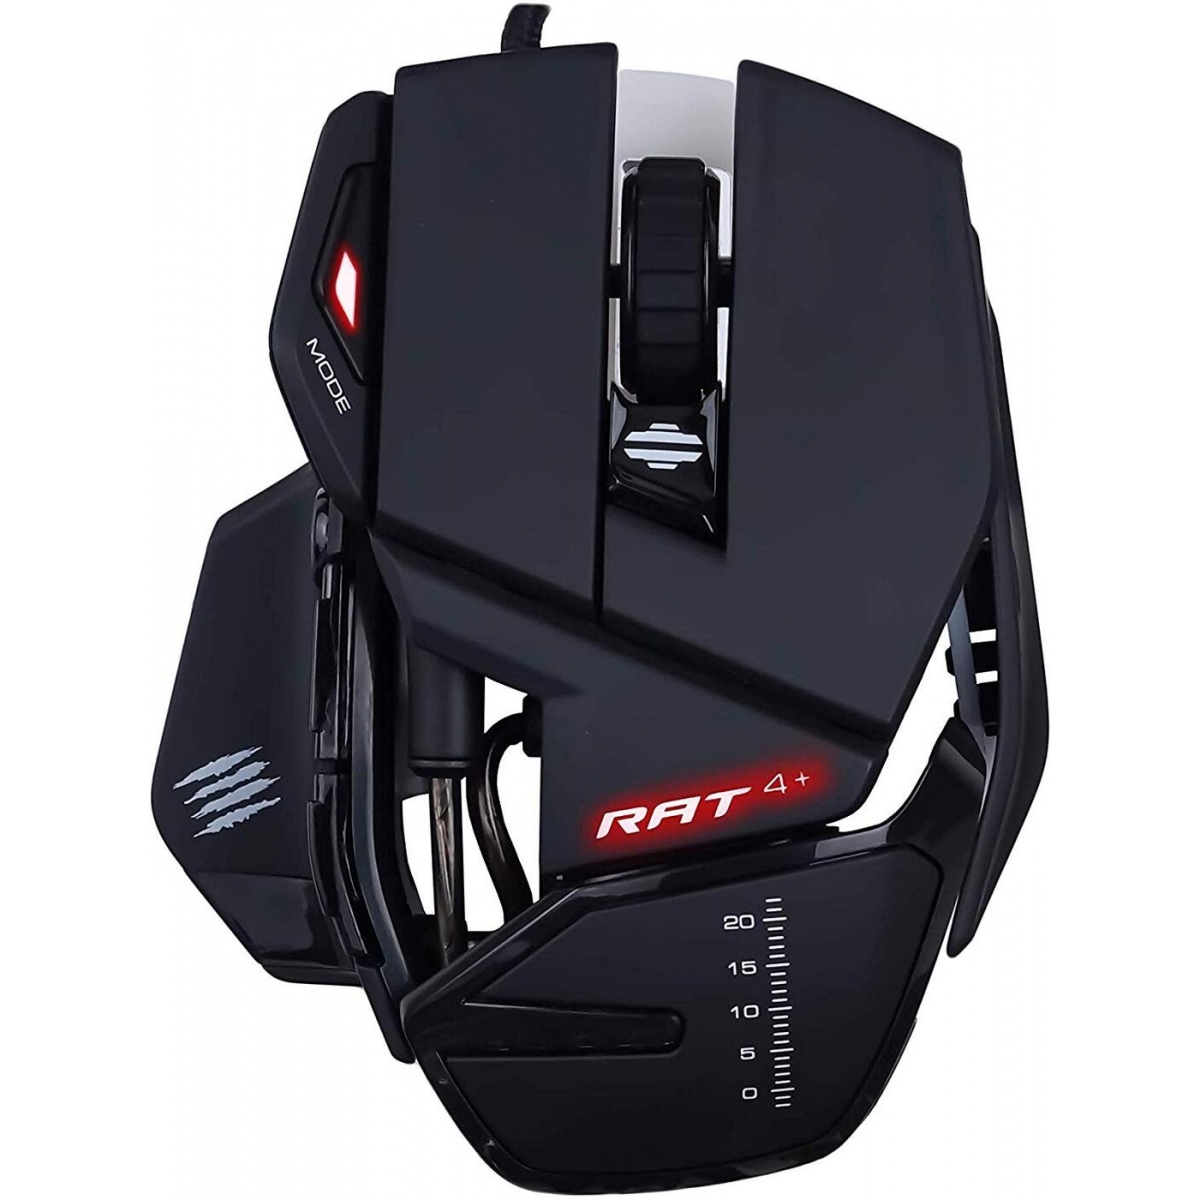 Игровая мышь Mad Catz R.A.T. 4+ чёрная (PMW3330, USB, 9 кнопок, 7200 dpi, красная подсветка) игровая мышь mad catz r a t pro x3 чёрная pmw3389 omron usb 10 кнопок 16000 dpi rgb подсветка